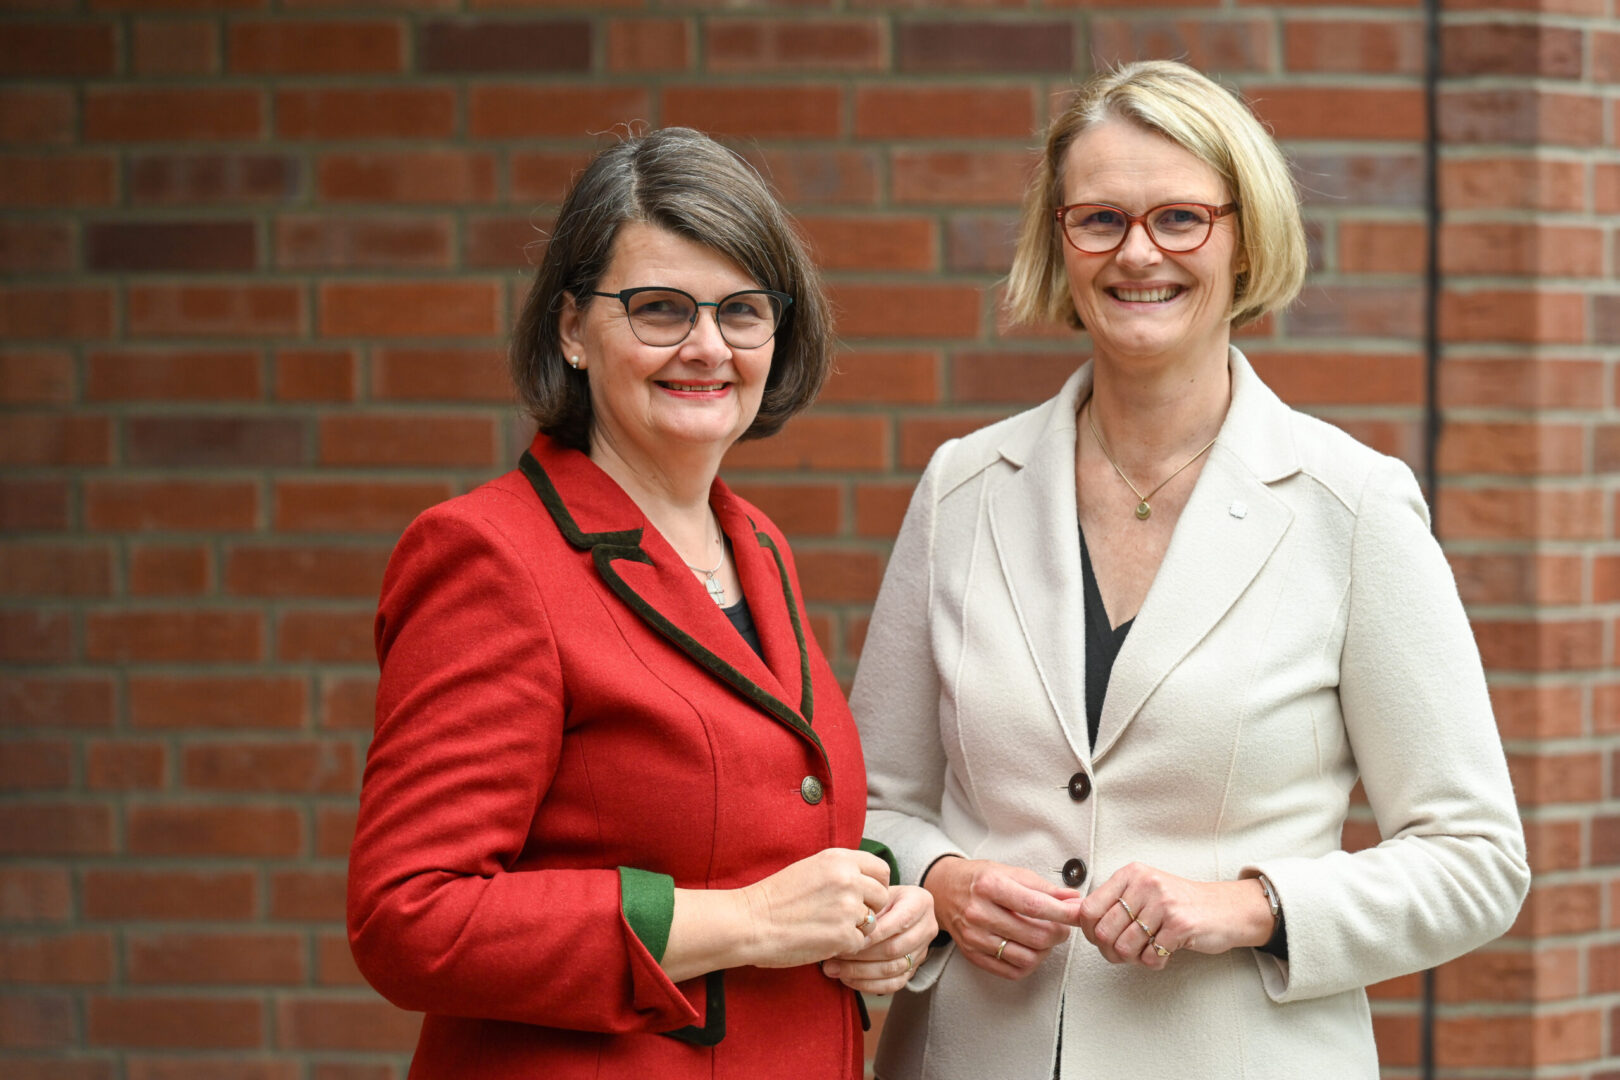 Die ehemalige KDFB-Präsidentin Dr. Maria Flachsbarth (l.) steht neben der neuen KDFB-Präsidentin Anja Karliczek vor einem Backsteingebäude. Beide lächeln.